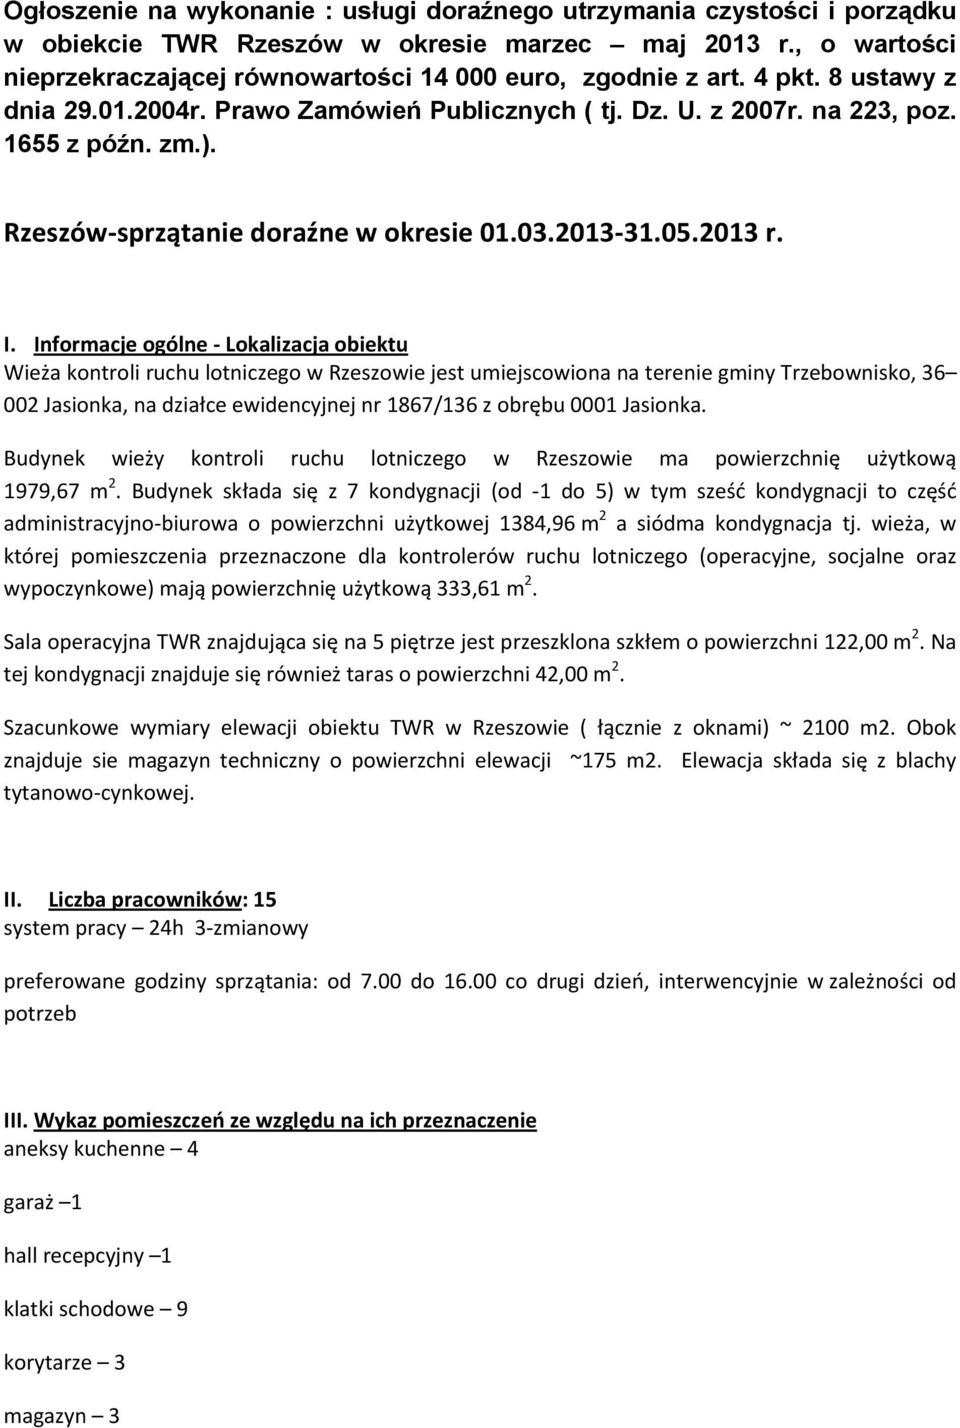 Informacje ogólne Lokalizacja obiektu Wieża kontroli ruchu lotniczego w Rzeszowie jest umiejscowiona na terenie gminy Trzebownisko, 36 002 Jasionka, na działce ewidencyjnej nr 1867/136 z obrębu 0001